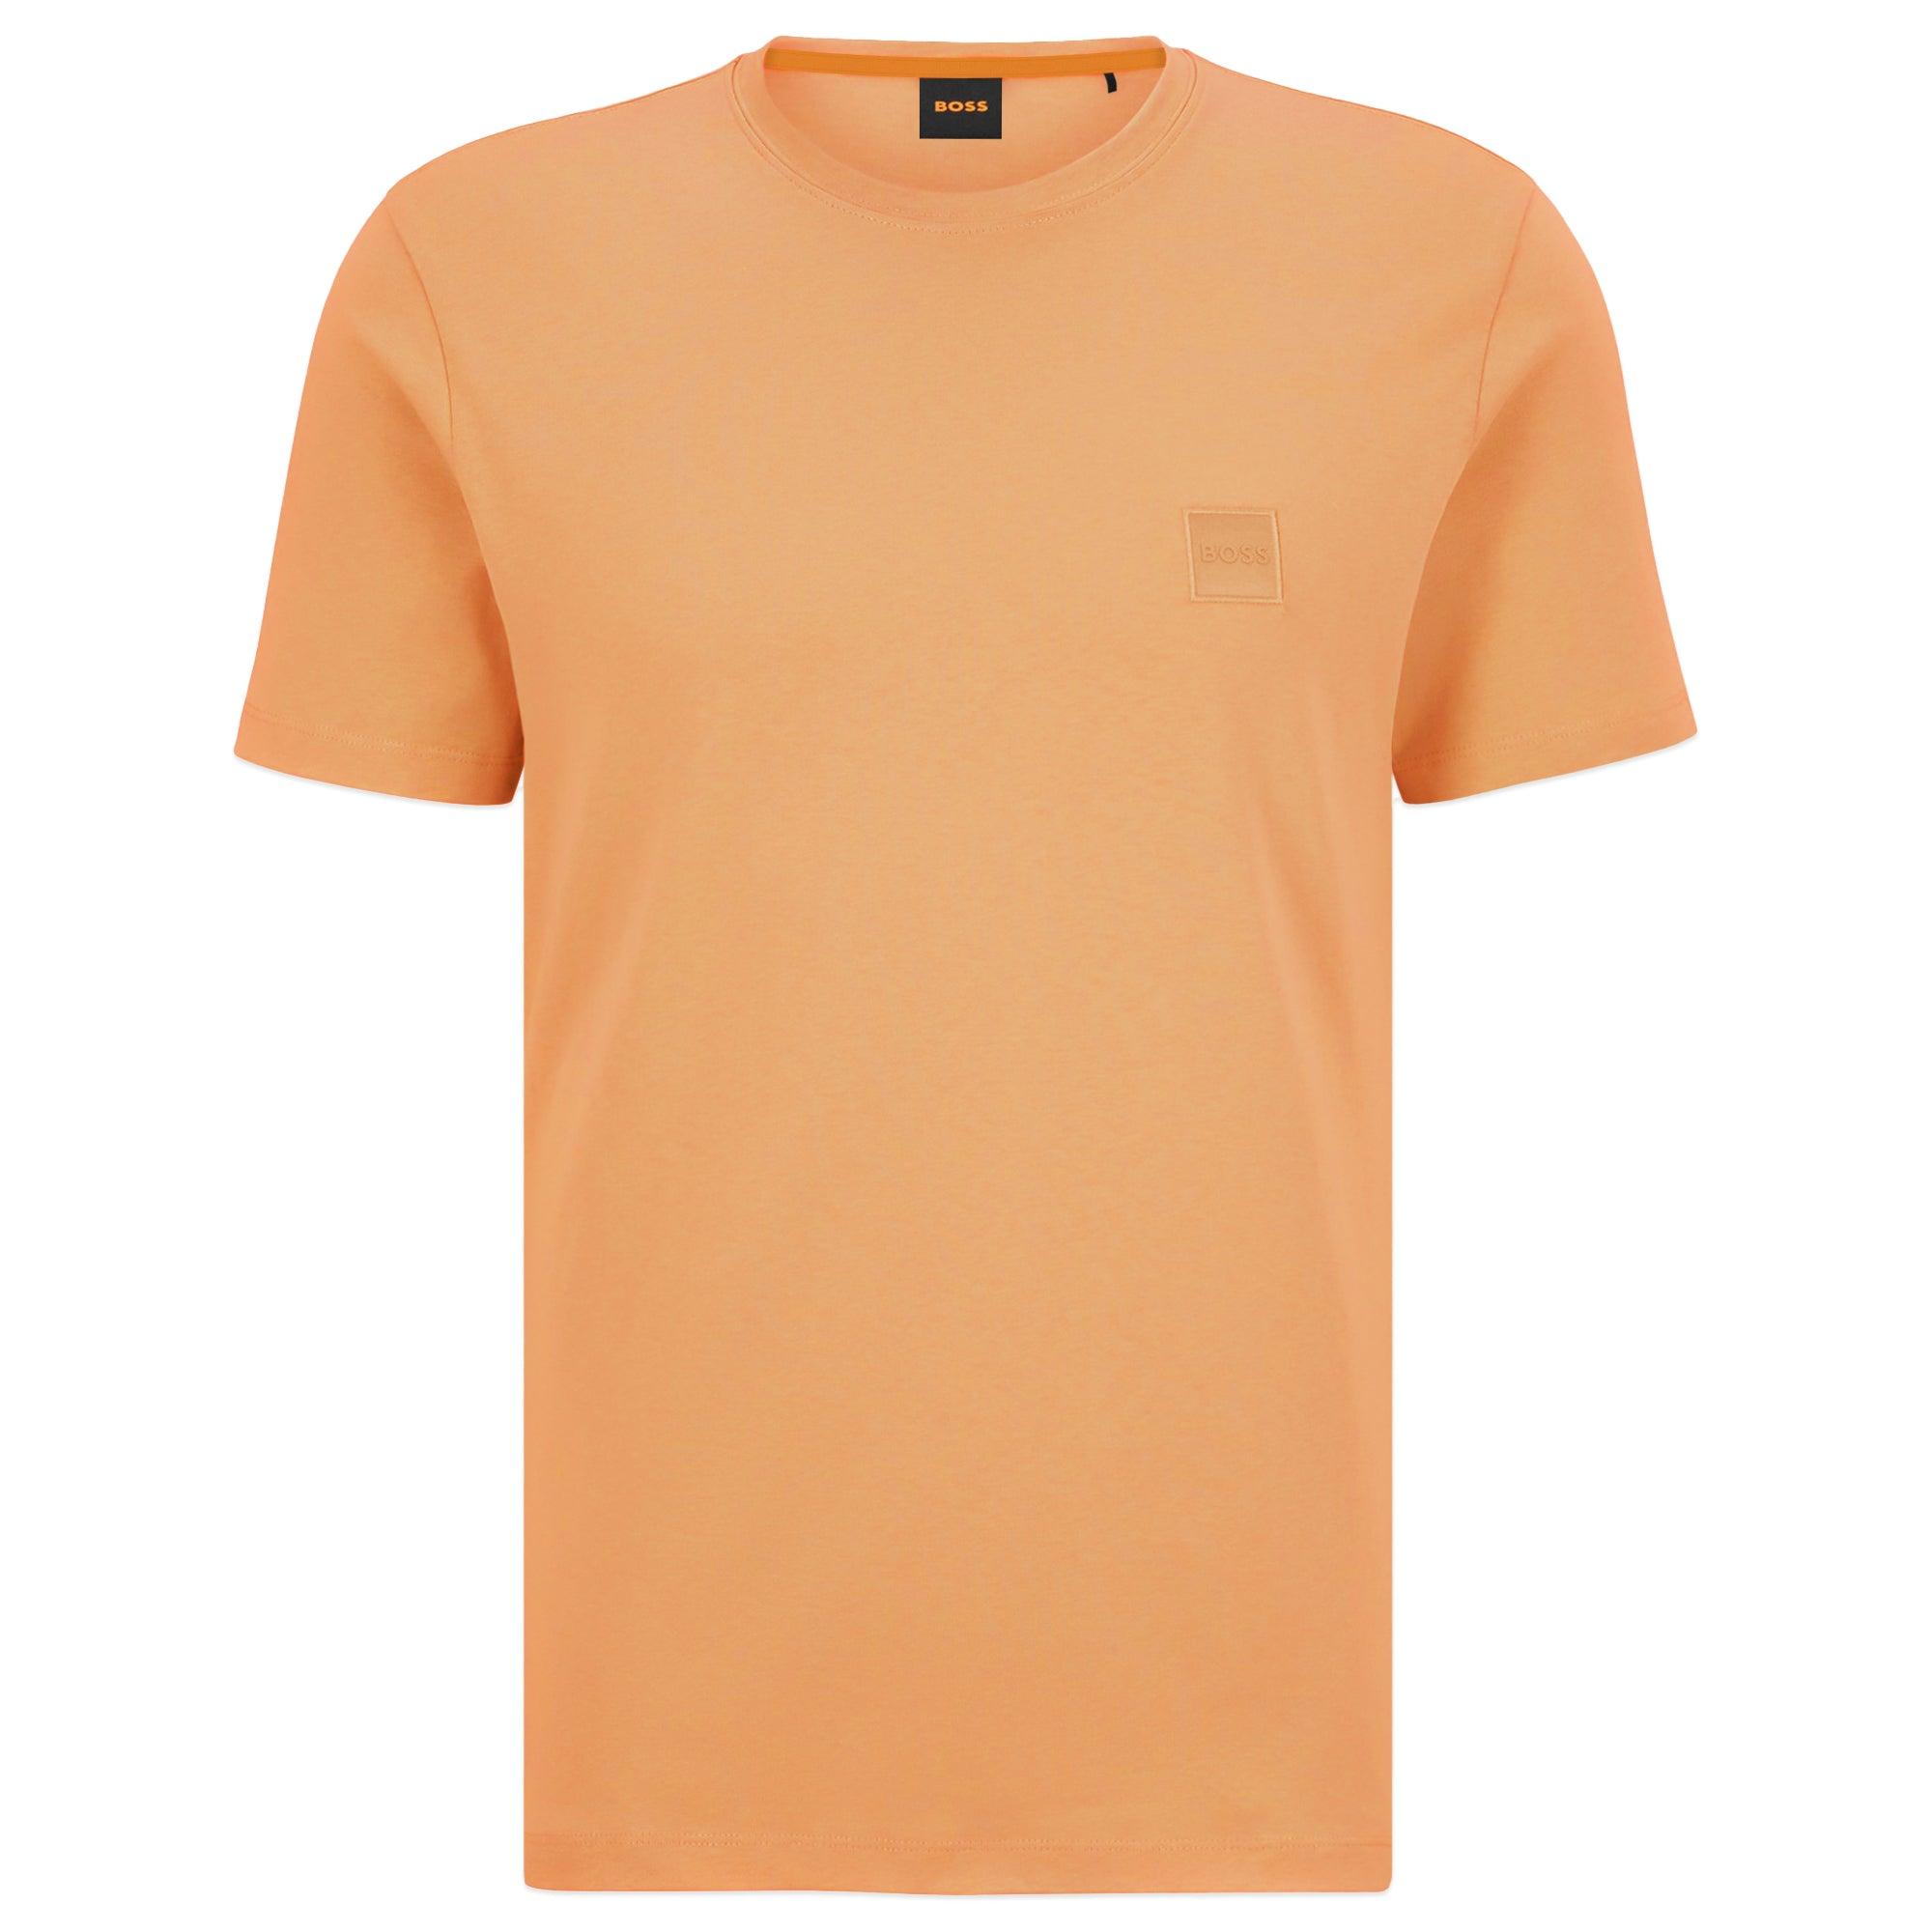 BOSS by HUGO BOSS Tales T-shirt in Orange for Men | Lyst